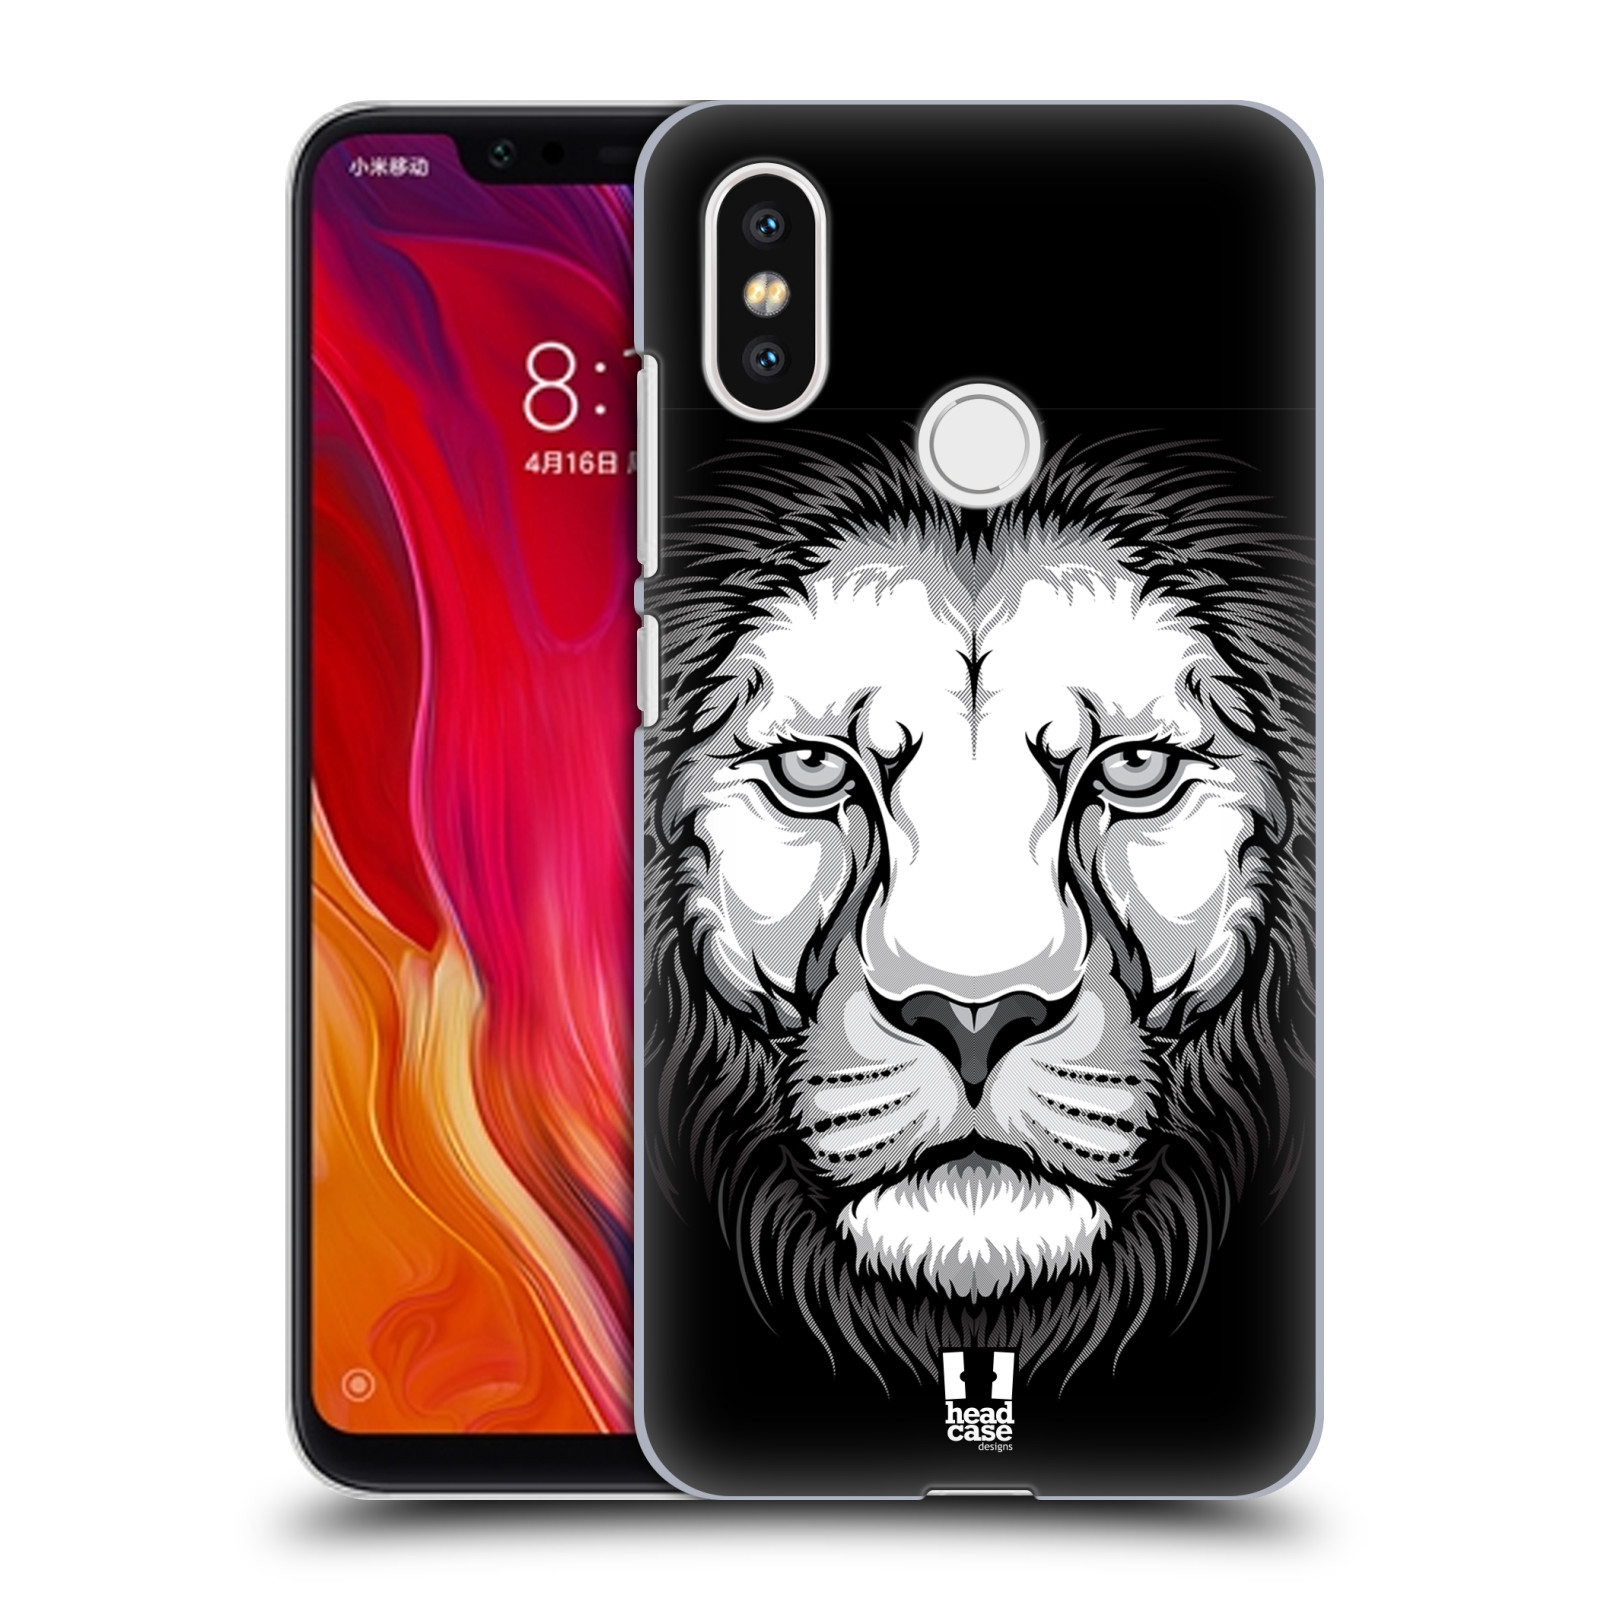 HEAD CASE plastový obal na mobil Xiaomi Mi 8 vzor Zvíře kreslená tvář lev